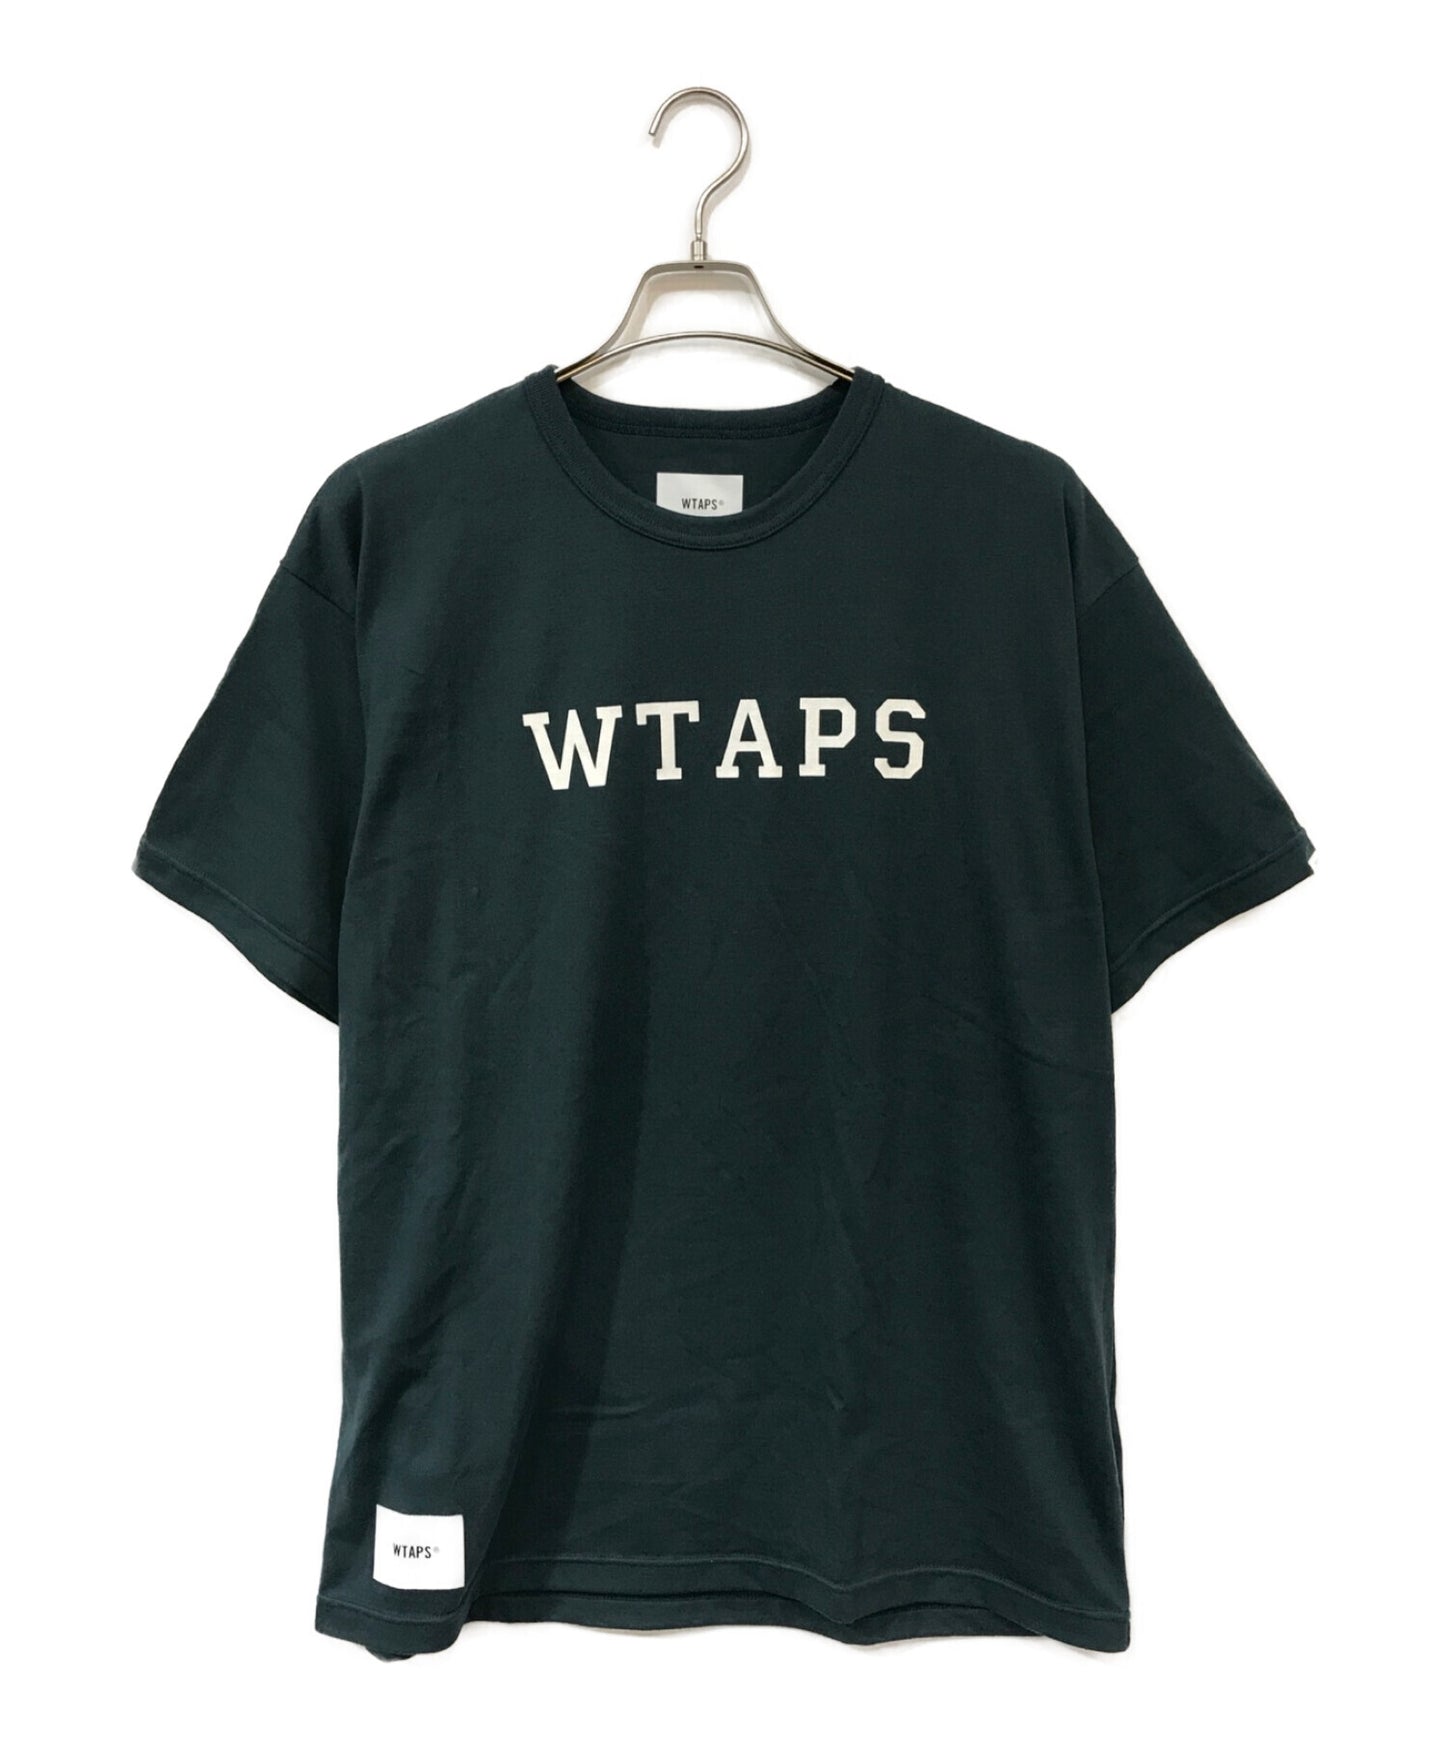 WTAPS 로고 프린트 티셔츠 221ATDT-CSM17